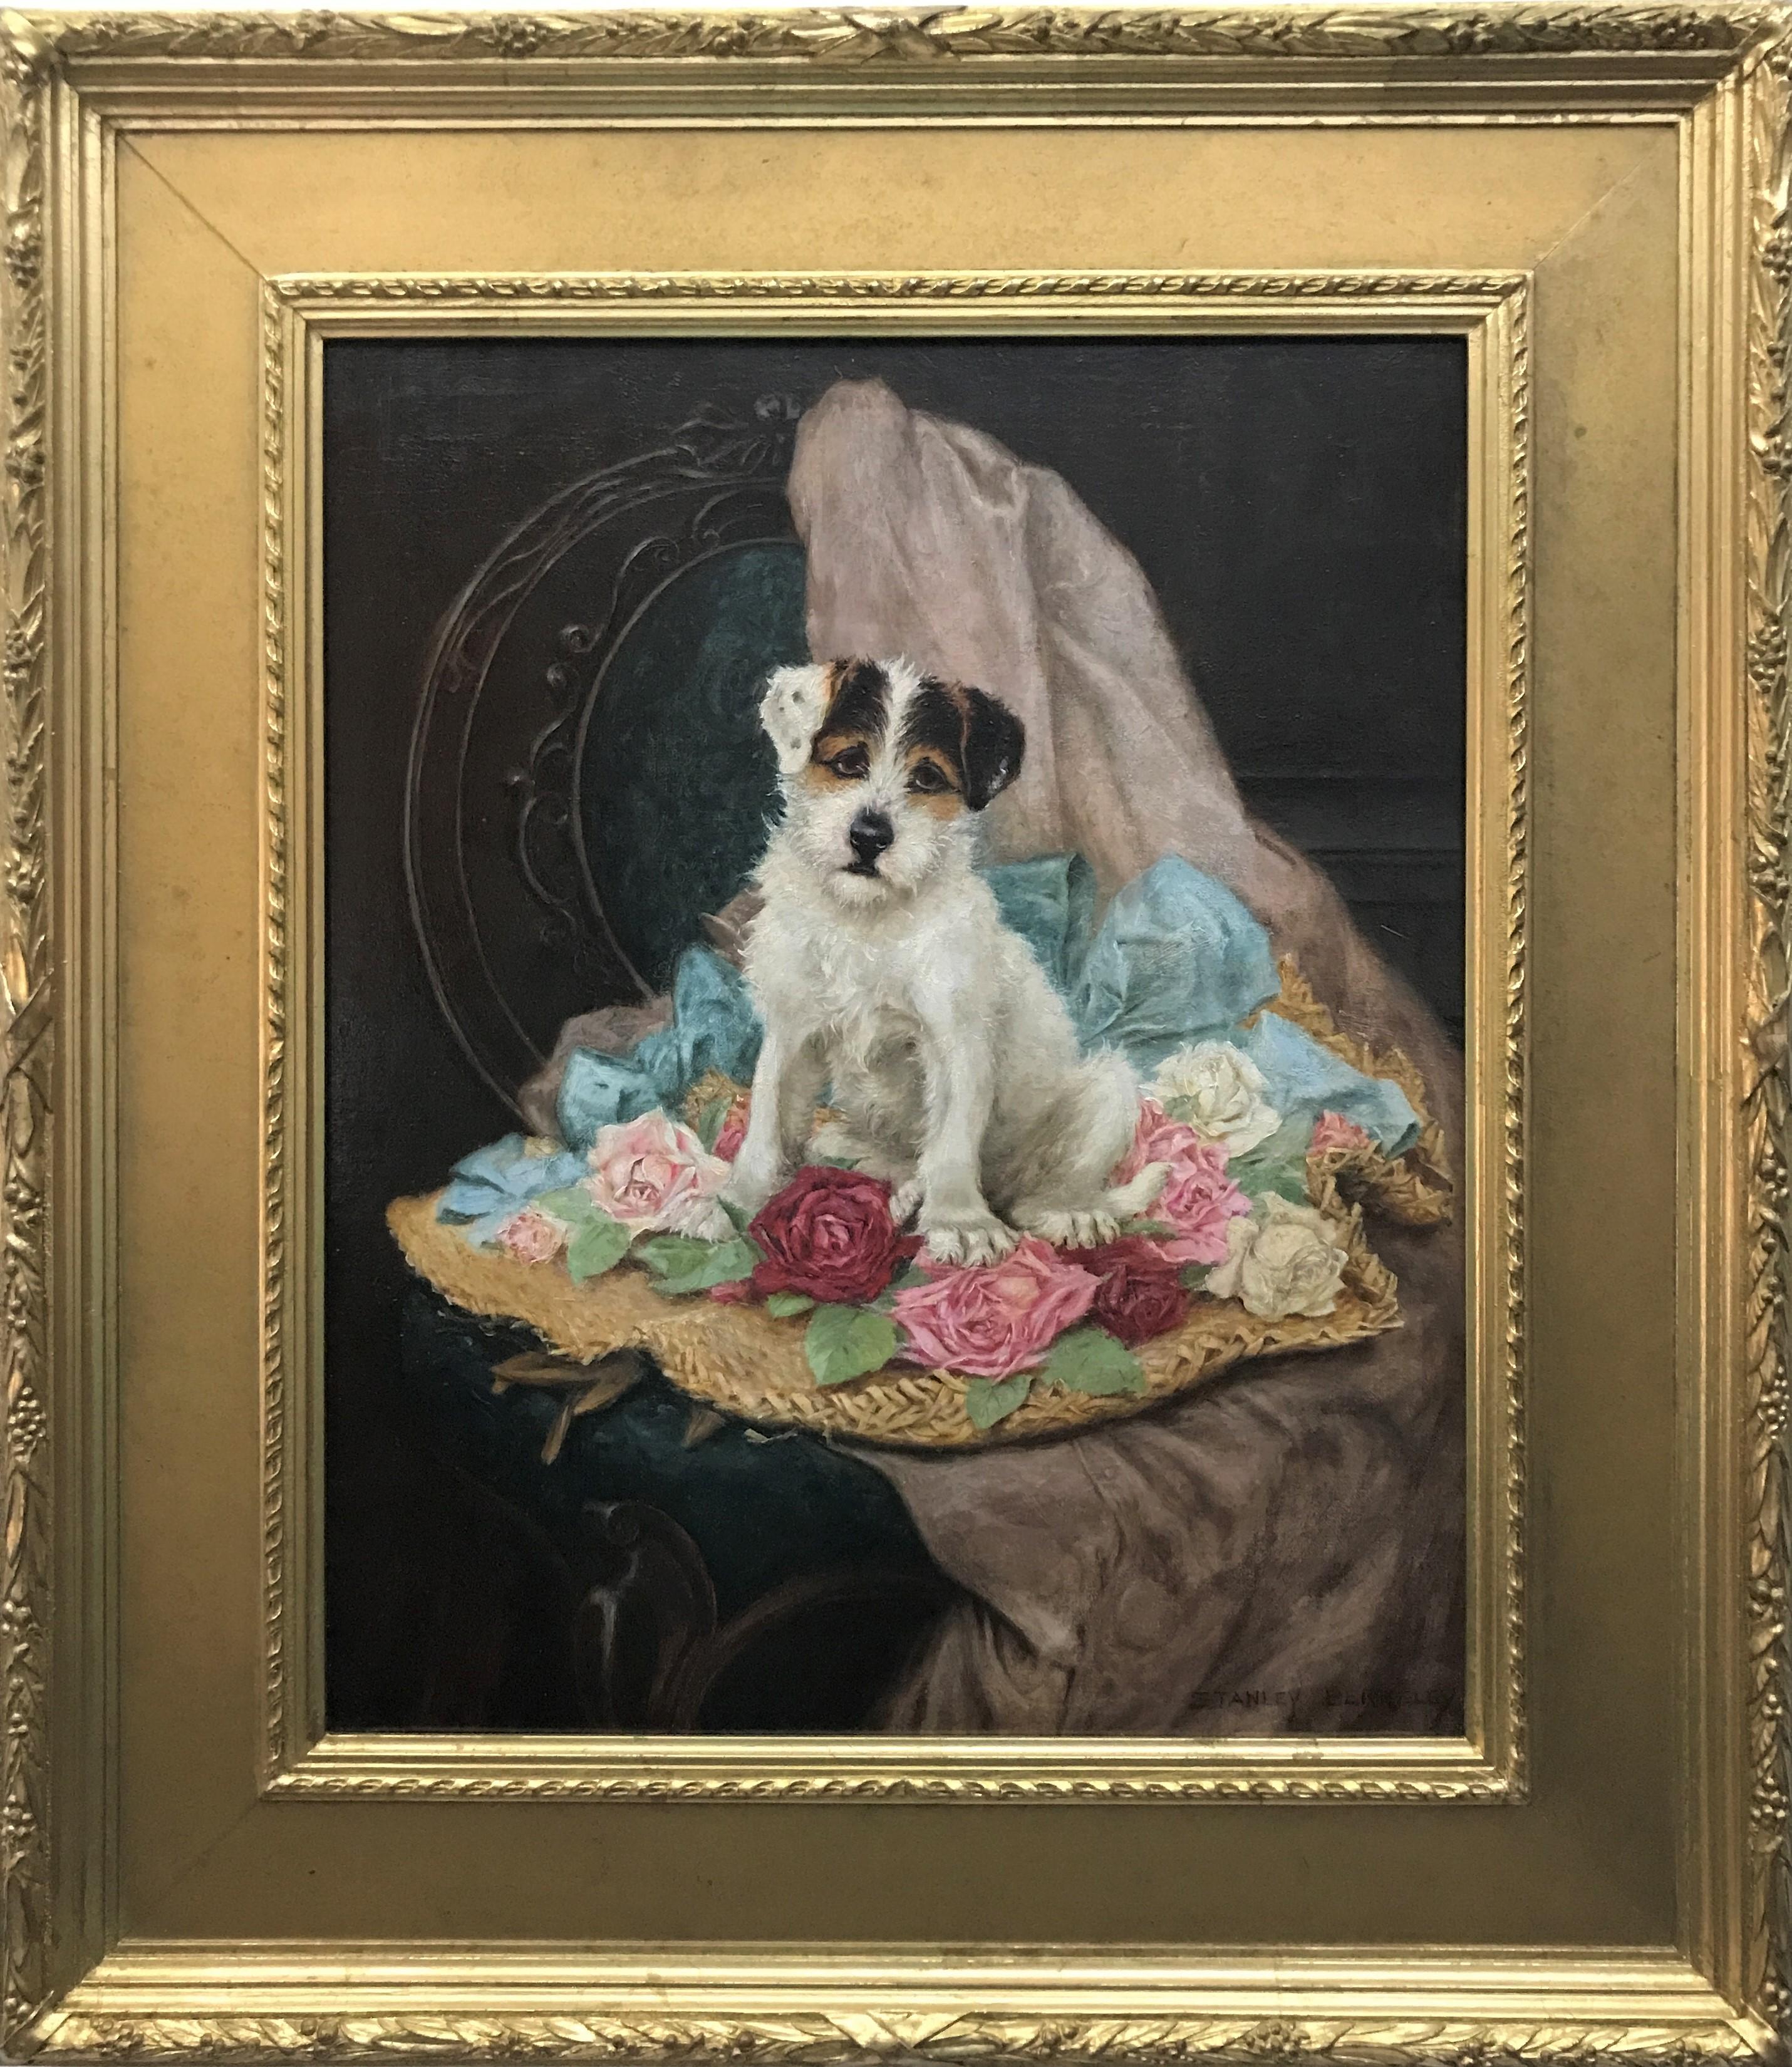 Dog assis parmi des roses, huile sur toile originale de l'artiste britannique victorien - Painting de Stanley Berkeley